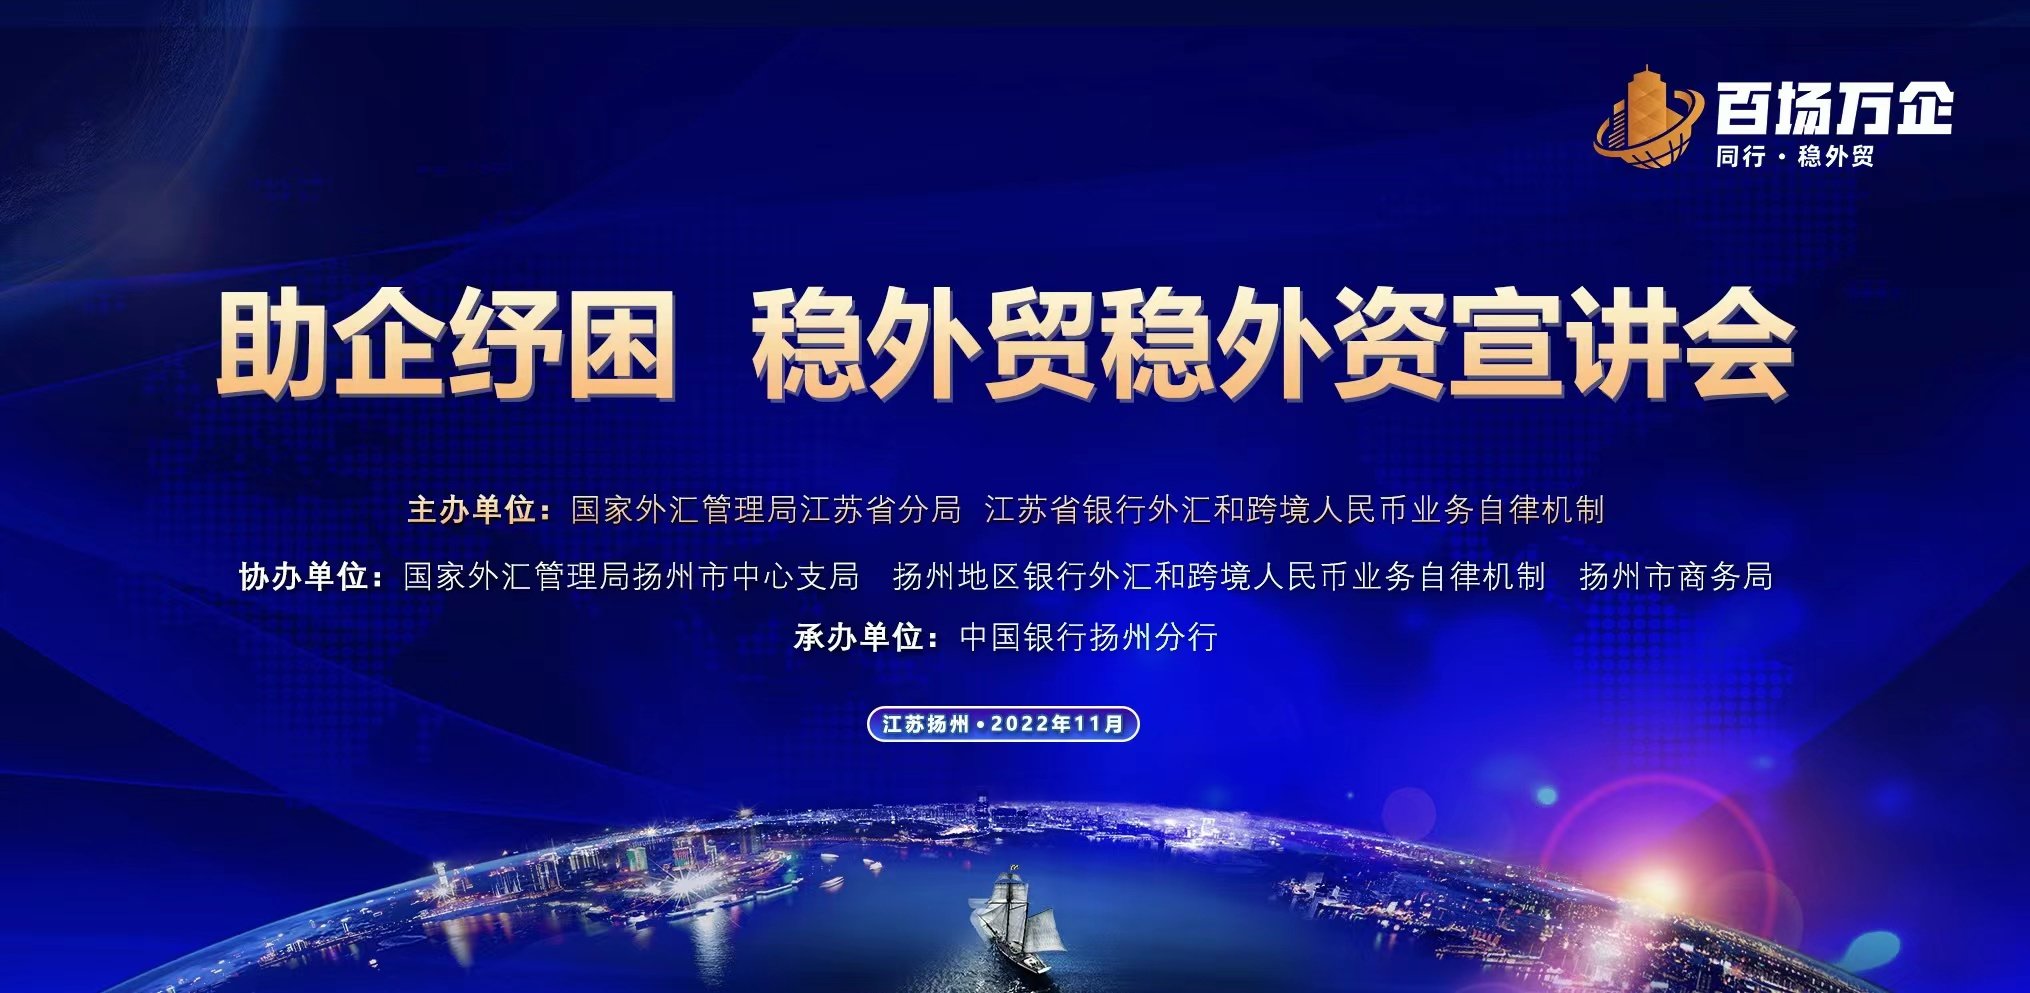 “助企纾困，稳外贸稳外资” 中国银行江苏省分行百场万企宣讲活动在扬州成功举办